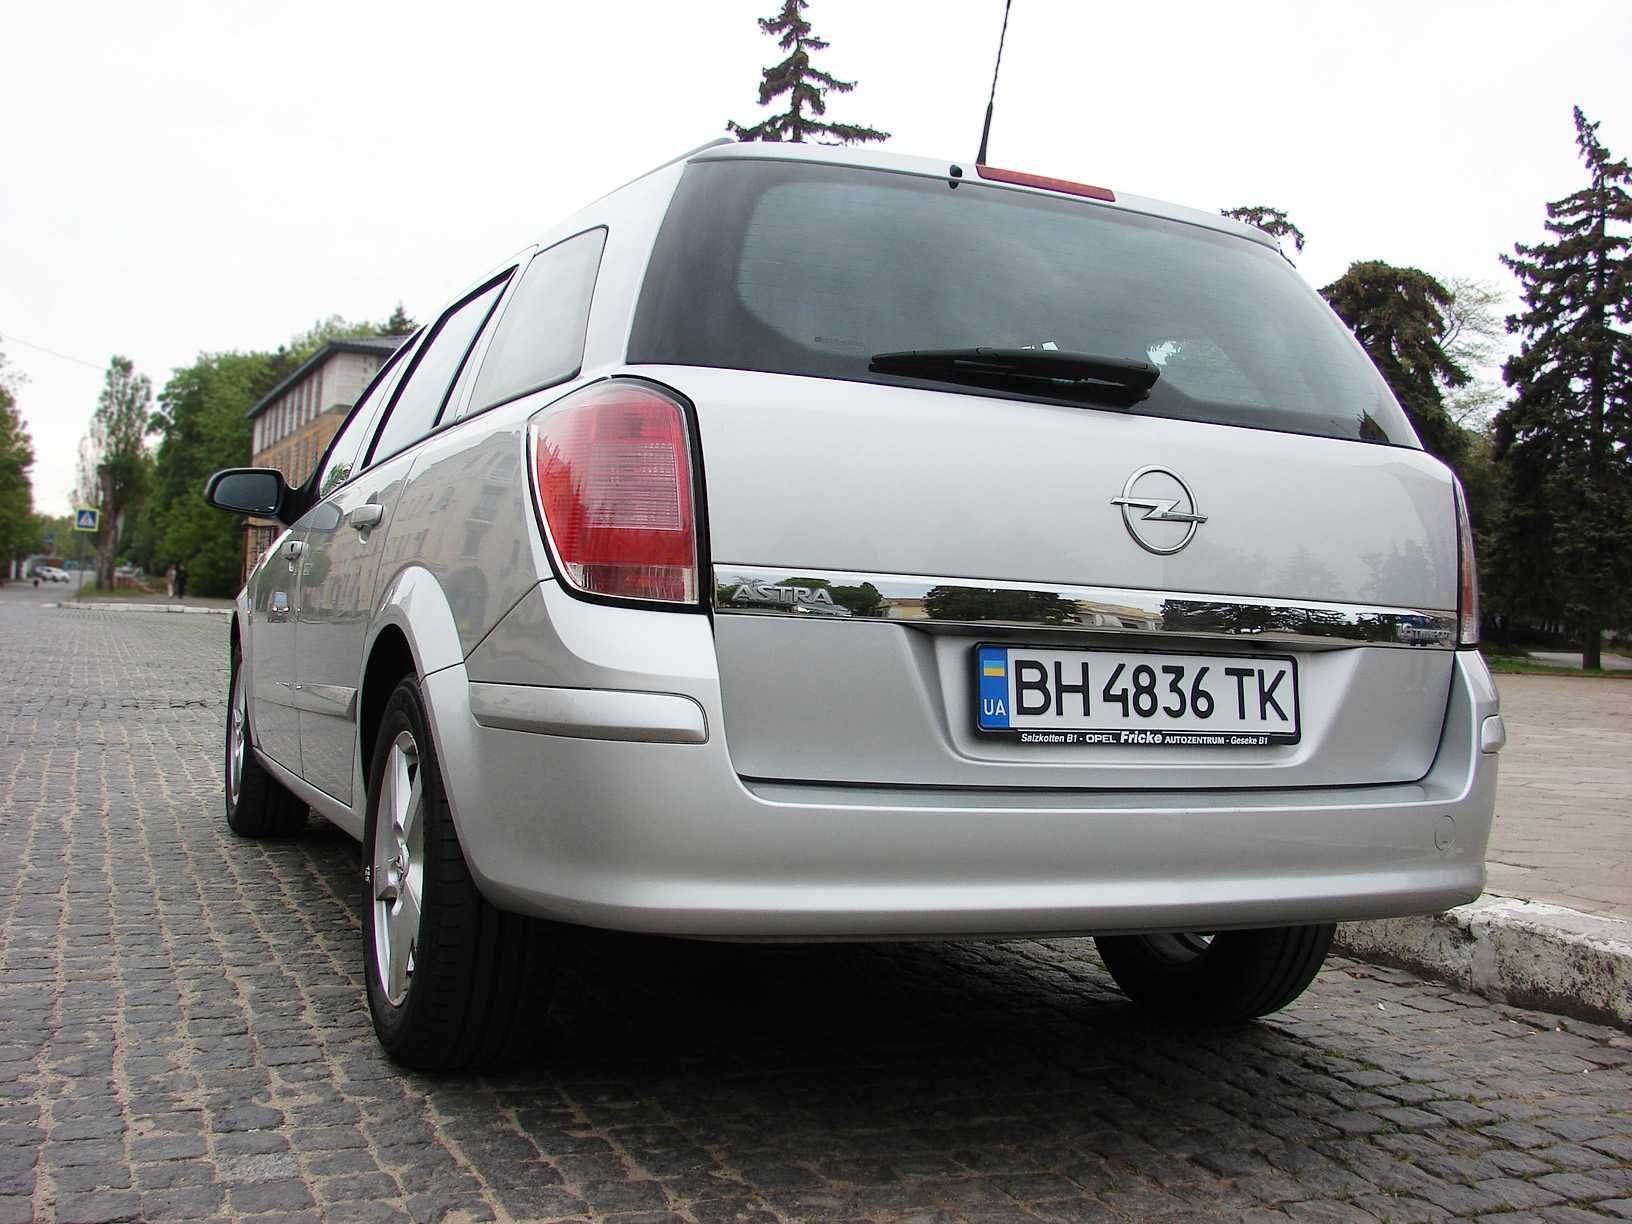 Свежепригнанная Opel Astra H 1.6 бензин 2006 г.в. (без подкрасов)